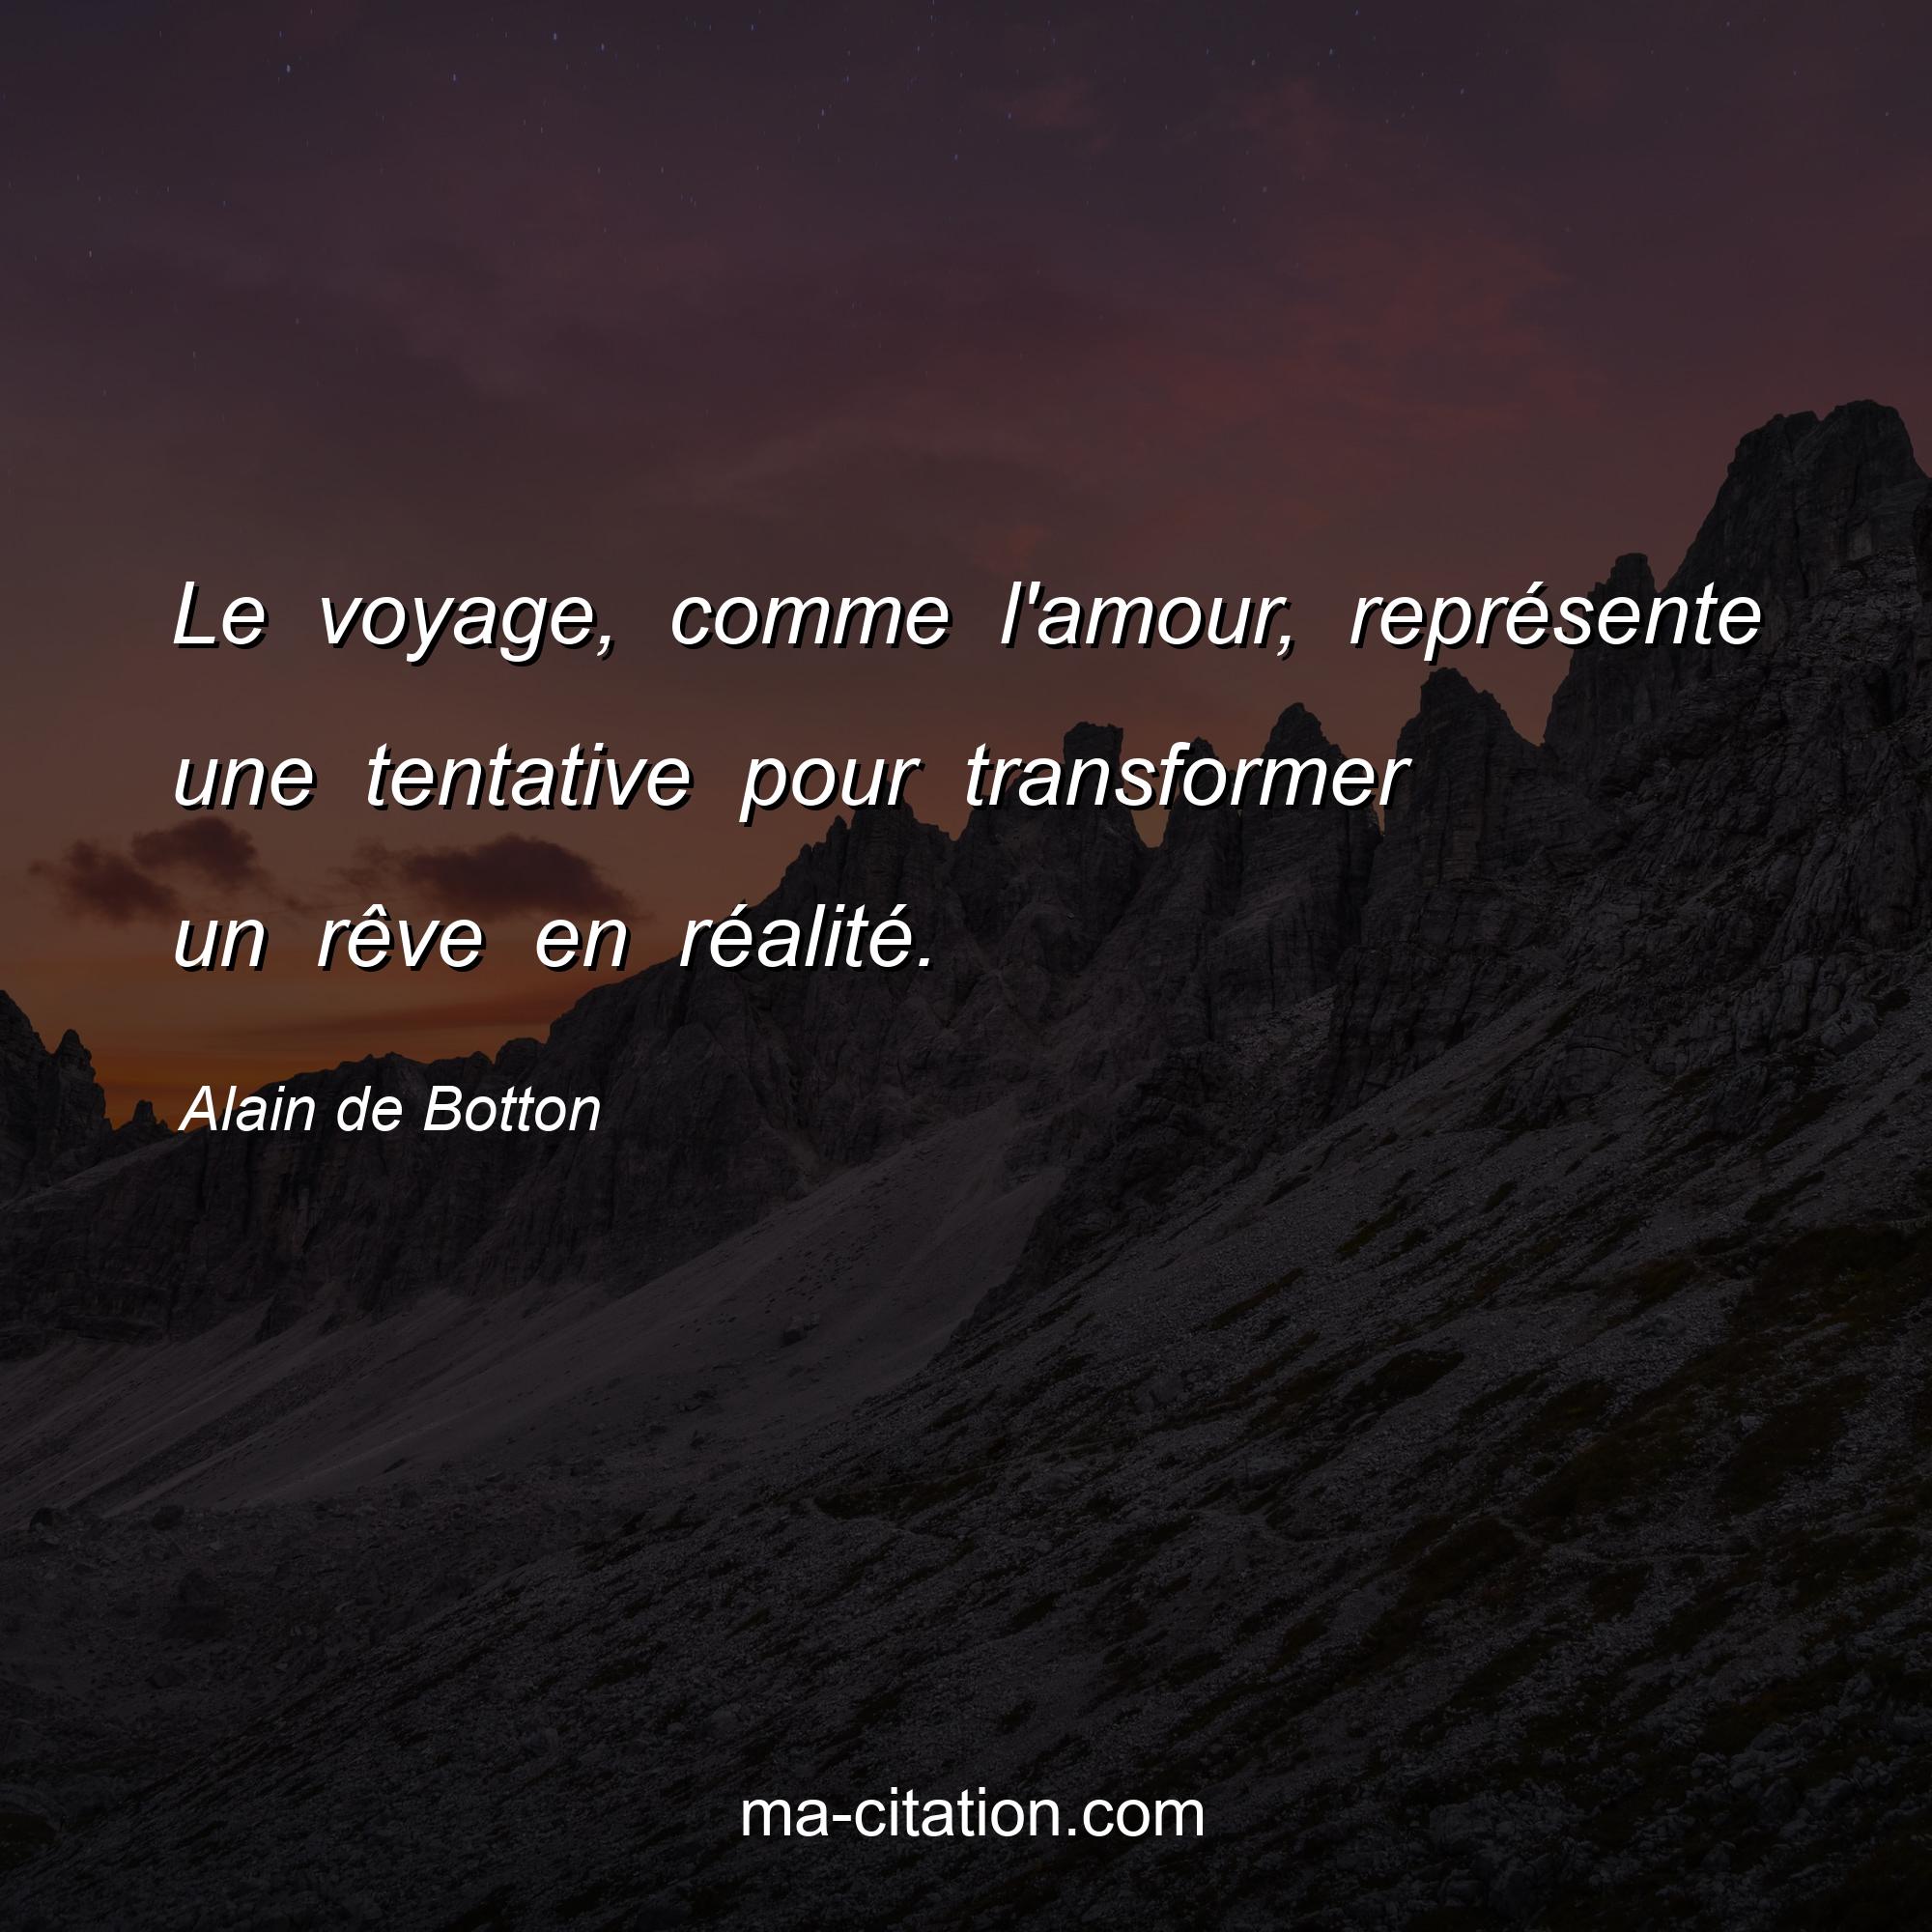 Alain de Botton : Le voyage, comme l'amour, représente une tentative pour transformer un rêve en réalité.